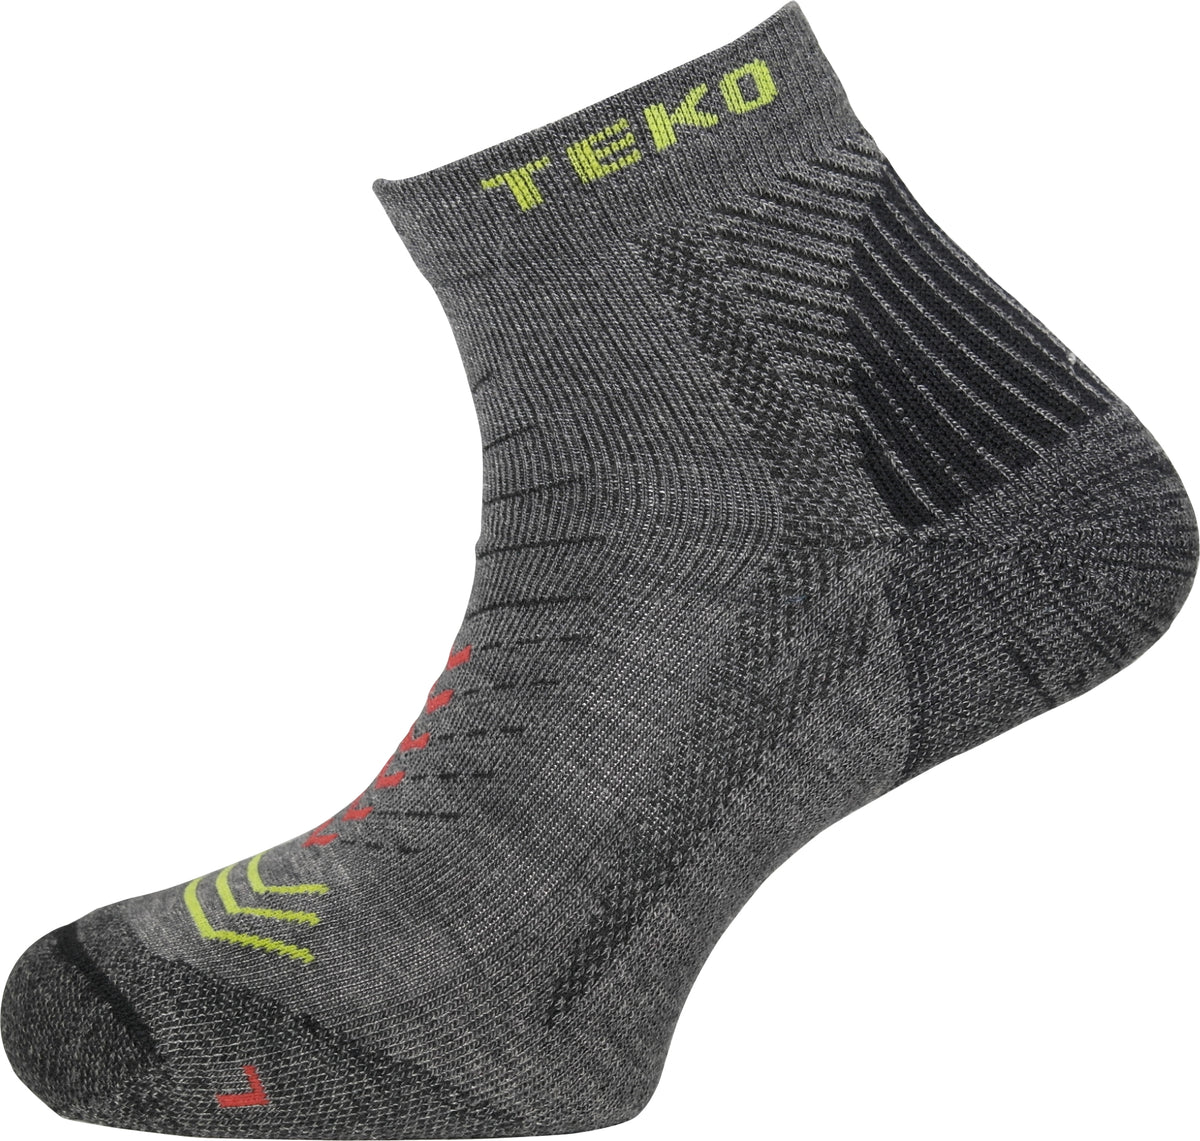 TEKO eco RUN 2.0 MERINO ENDURO Light Half Cushion Running Socks